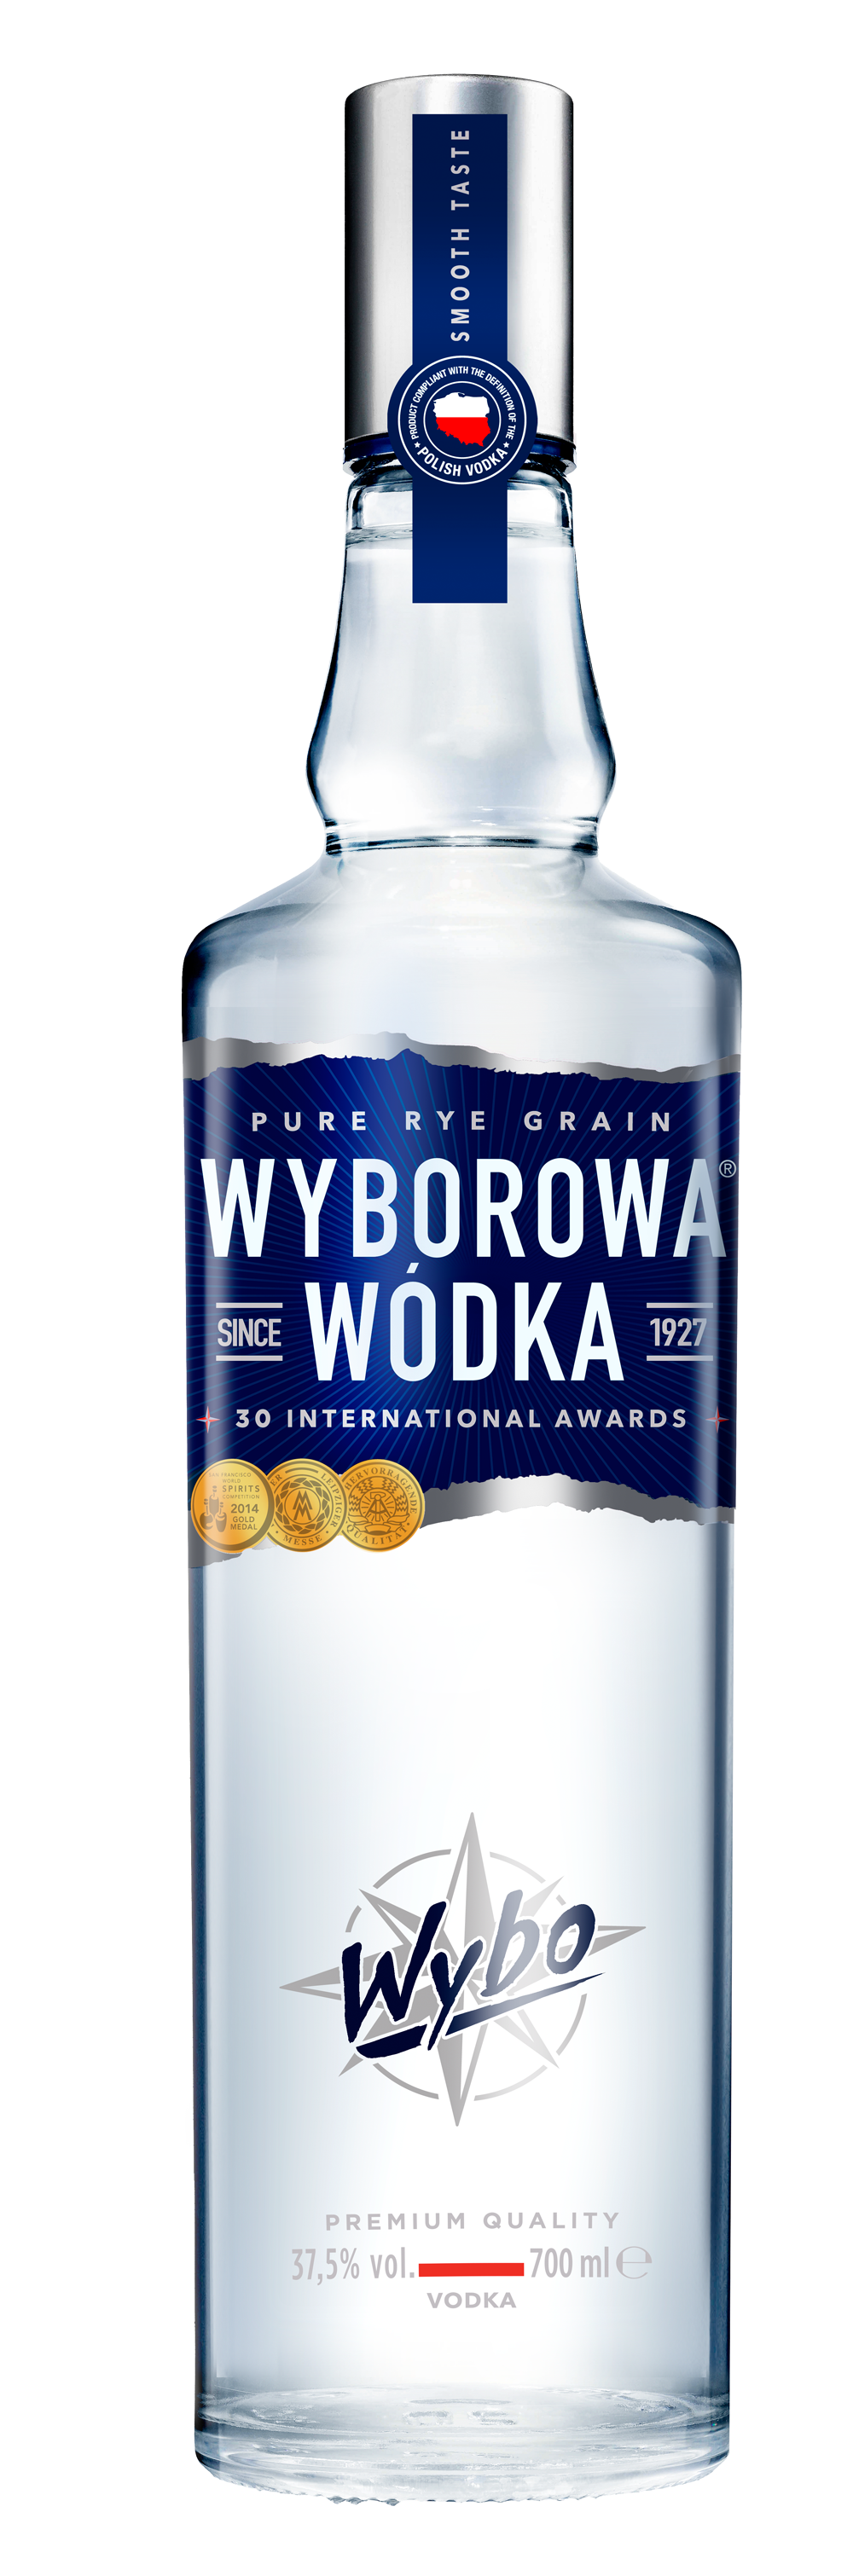 Wyborowa Pure Rye Grain Vodka  